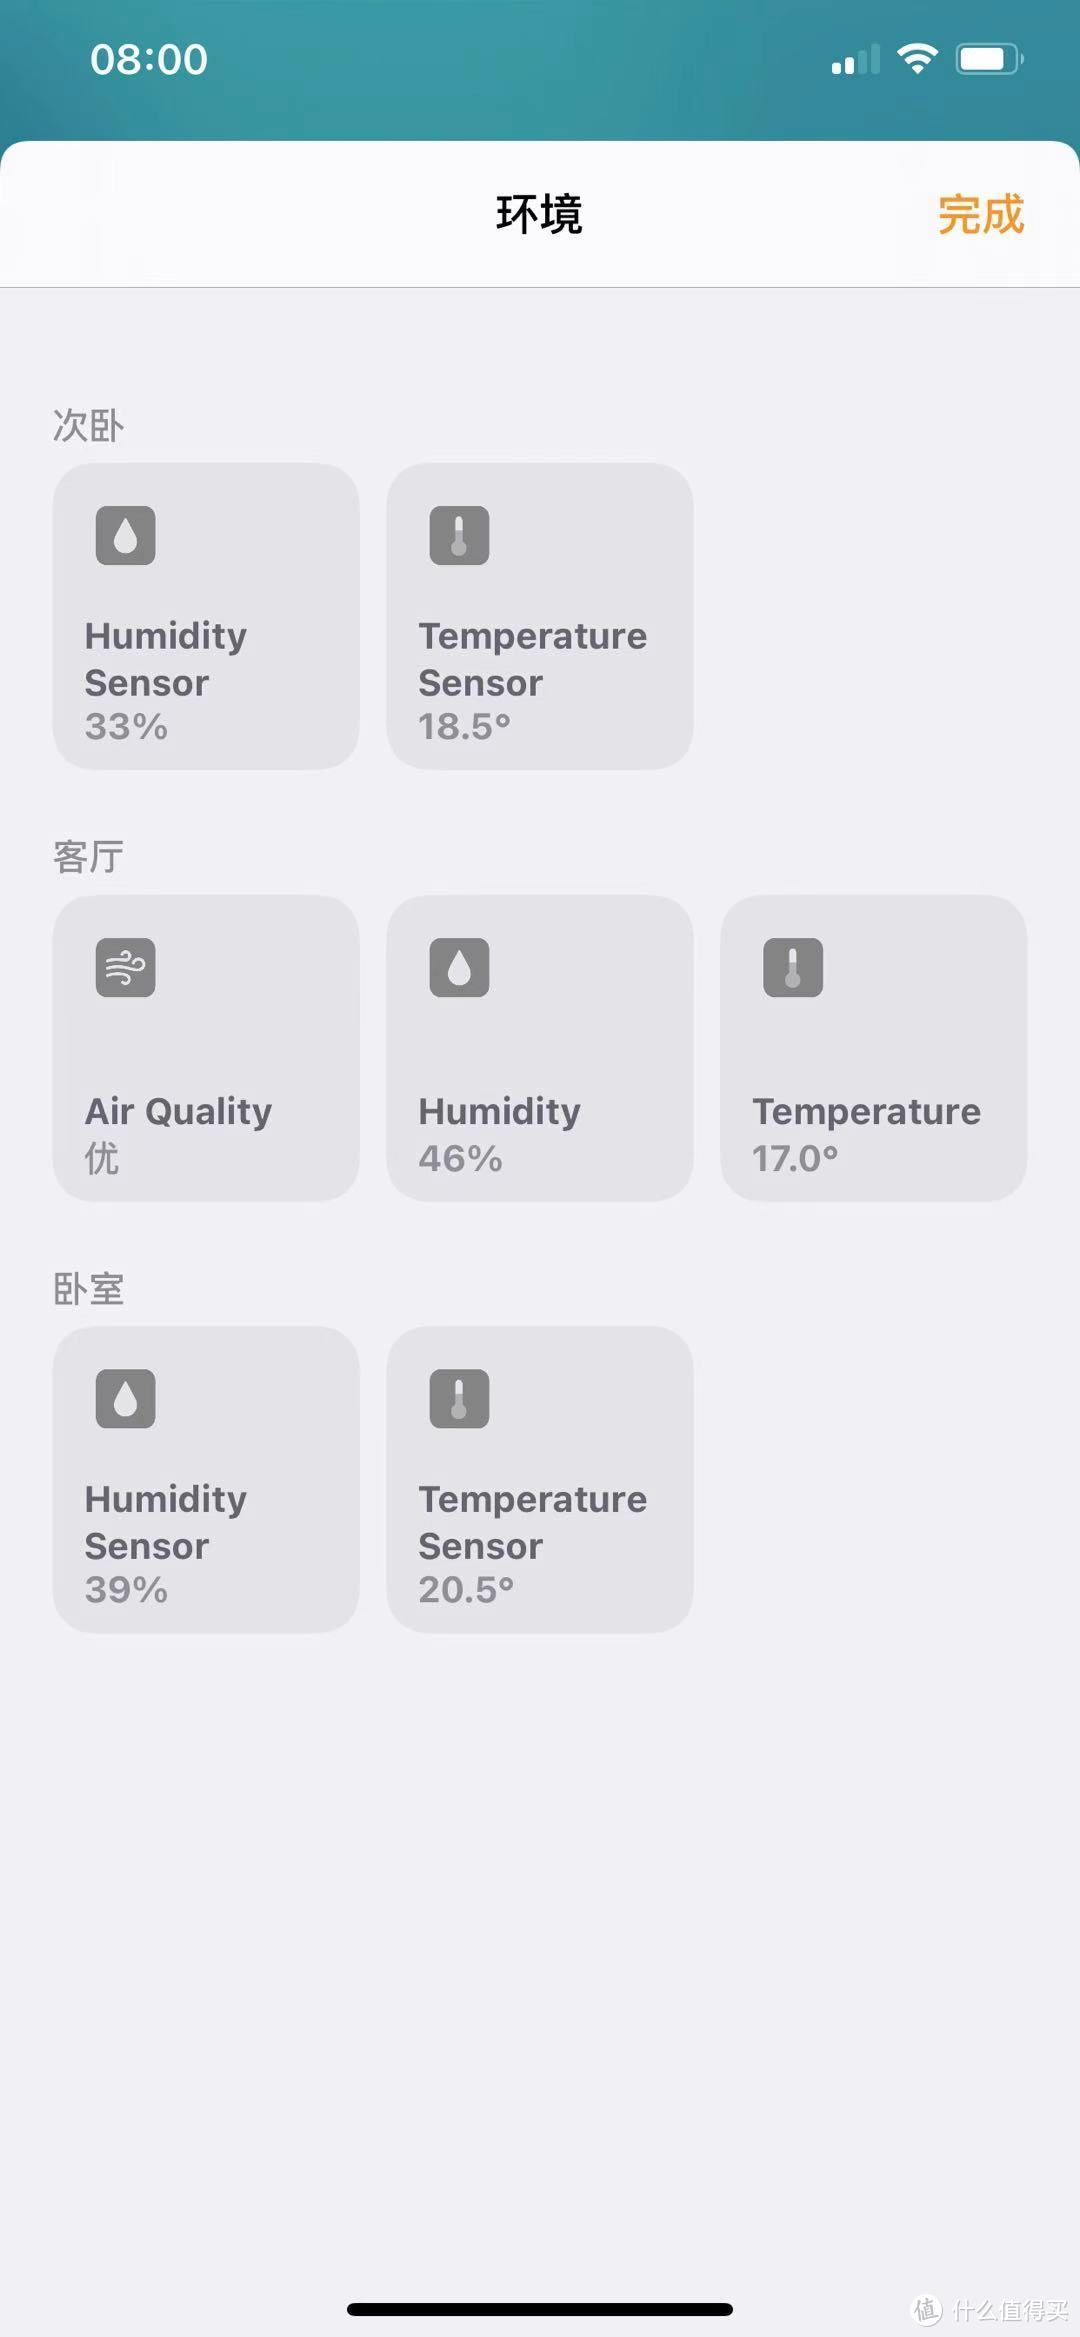 可以看到温度和湿度以及空气质量的数值，其中空气质量是由优/良/一般/不佳和差现实的